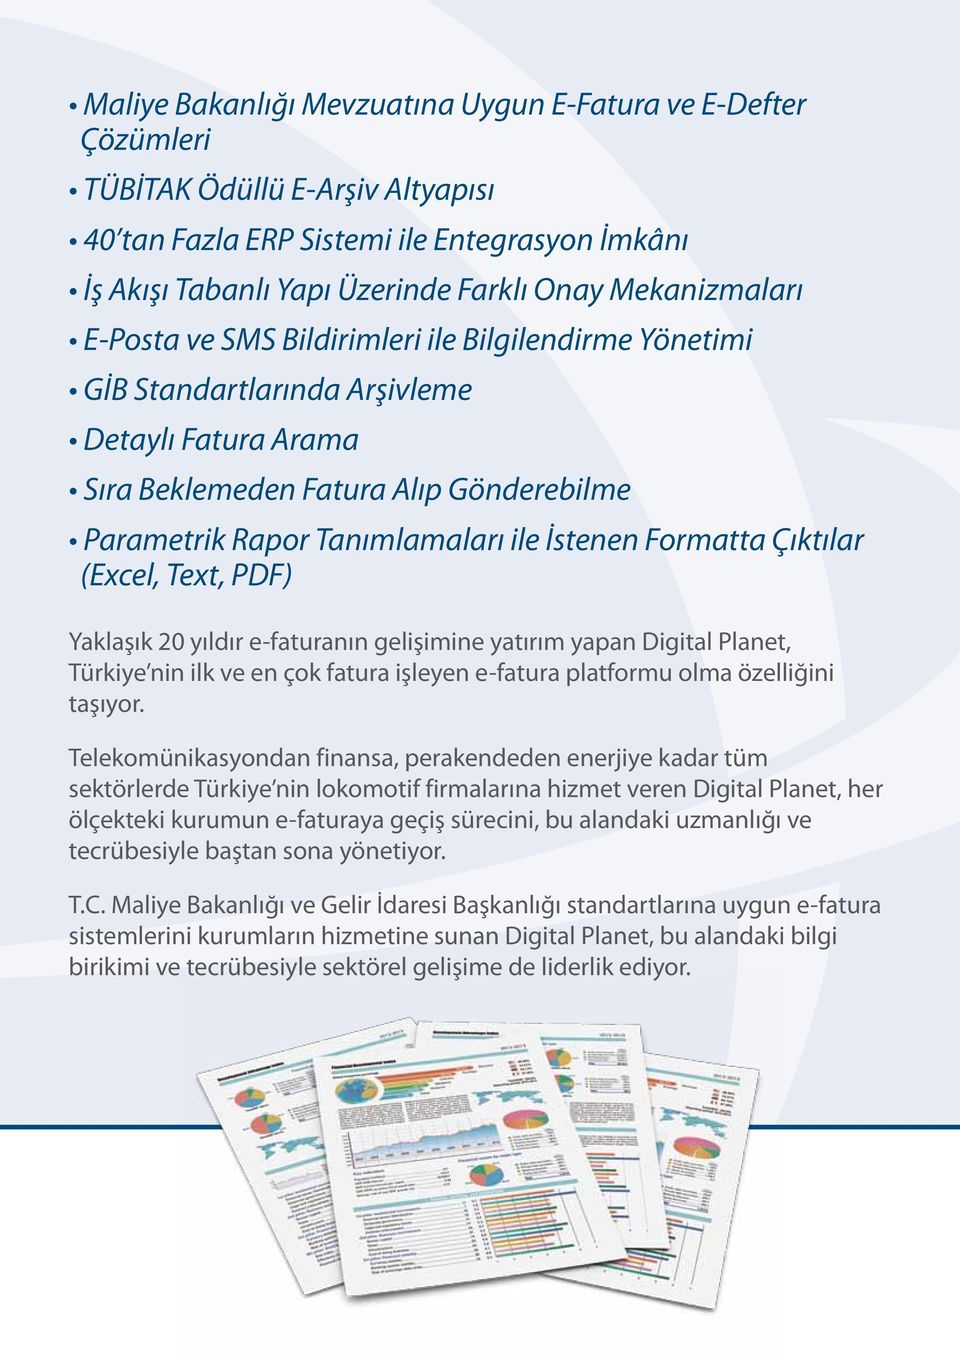 İstenen Formatta Çıktılar (Excel, Text, PDF) Yaklaşık 20 yıldır e-faturanın gelişimine yatırım yapan Digital Planet, Türkiye nin ilk ve en çok fatura işleyen e-fatura platformu olma özelliğini